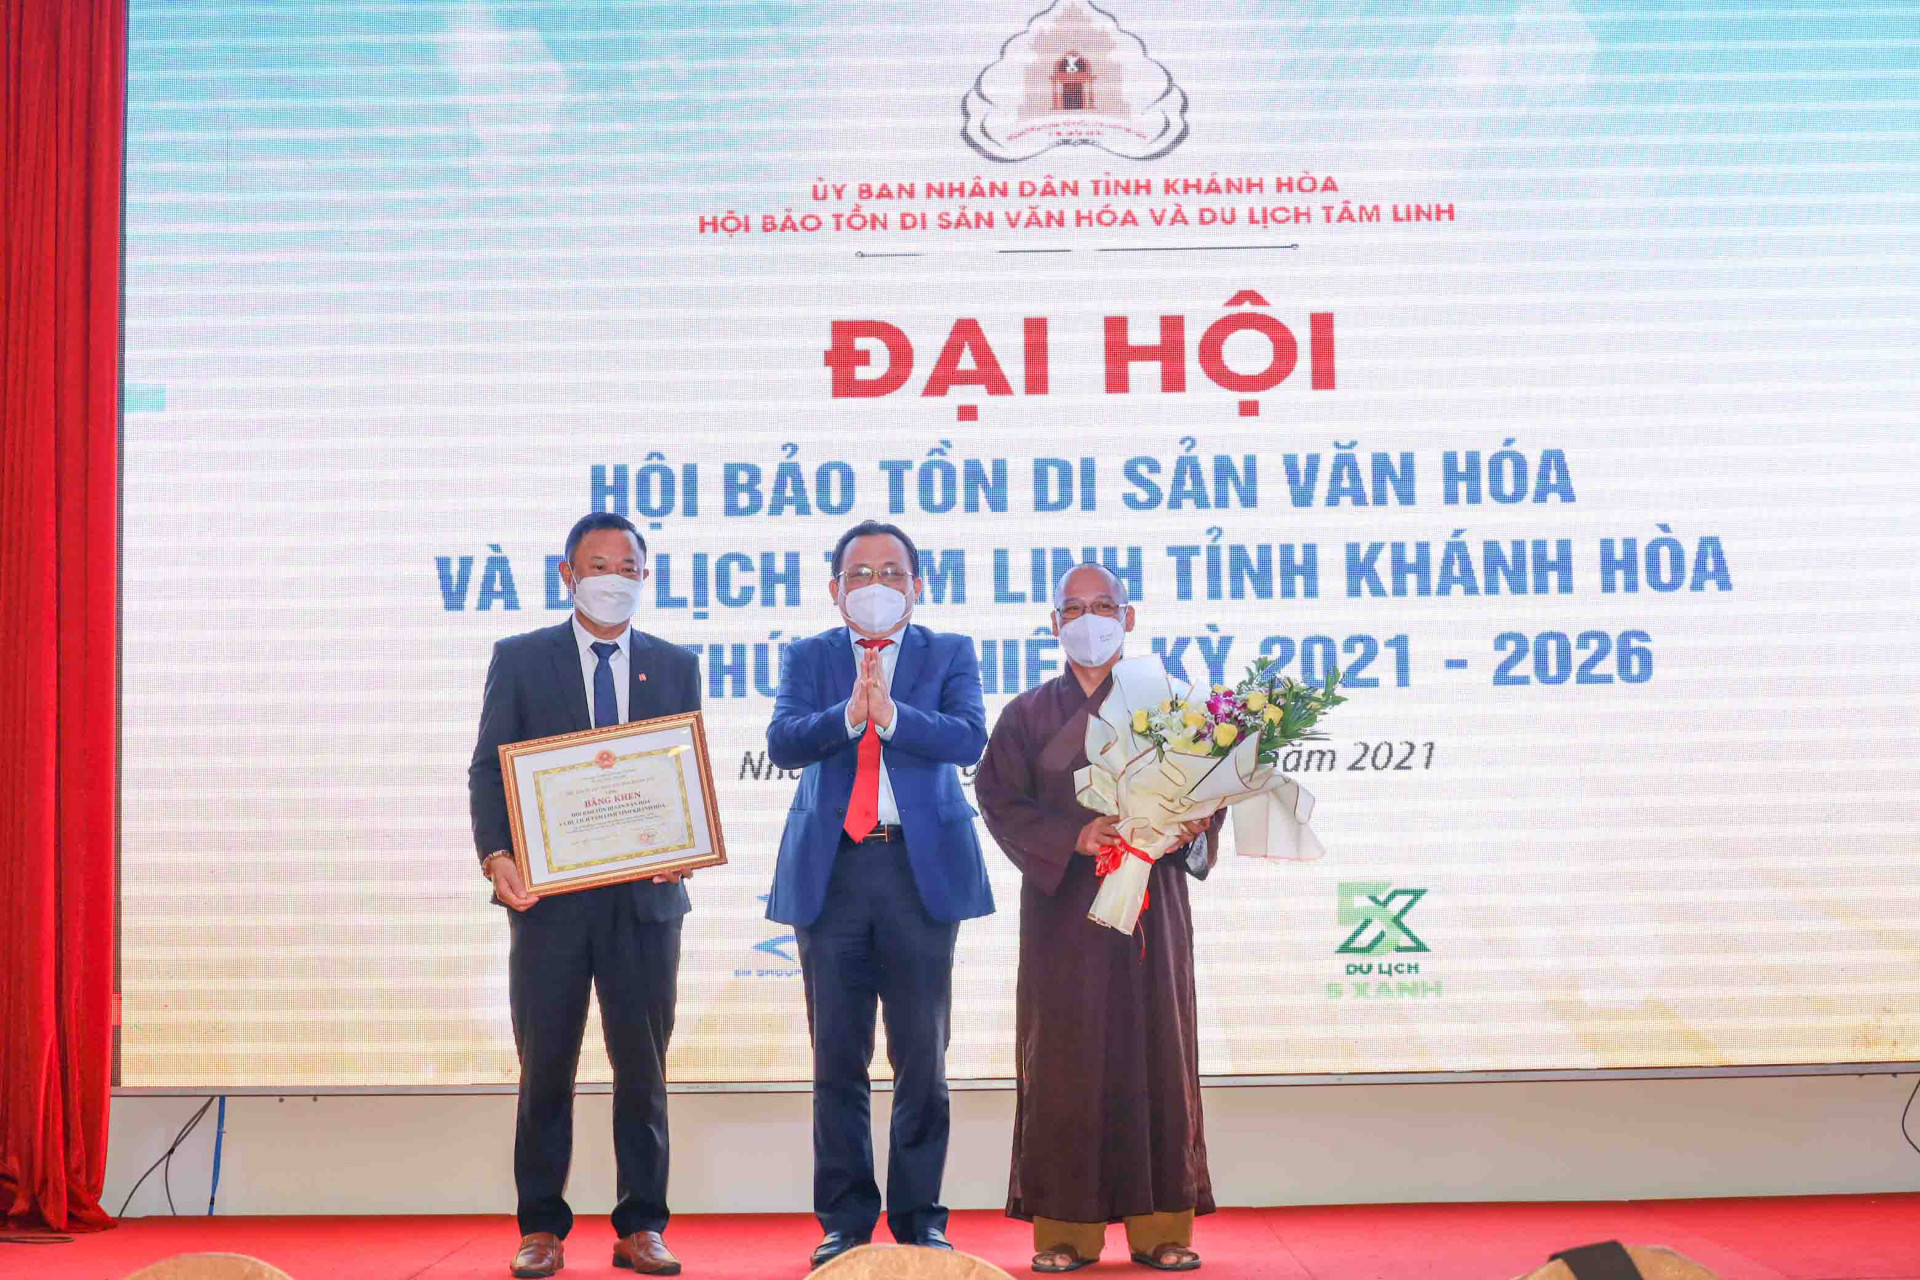 Ông Lê Hữu Hoàng trao bằng khen của UBND tỉnh cho tập thể Hội Bảo tồn Di sản văn hóa và du lịch tâm linh tỉnh Khánh Hòa. 